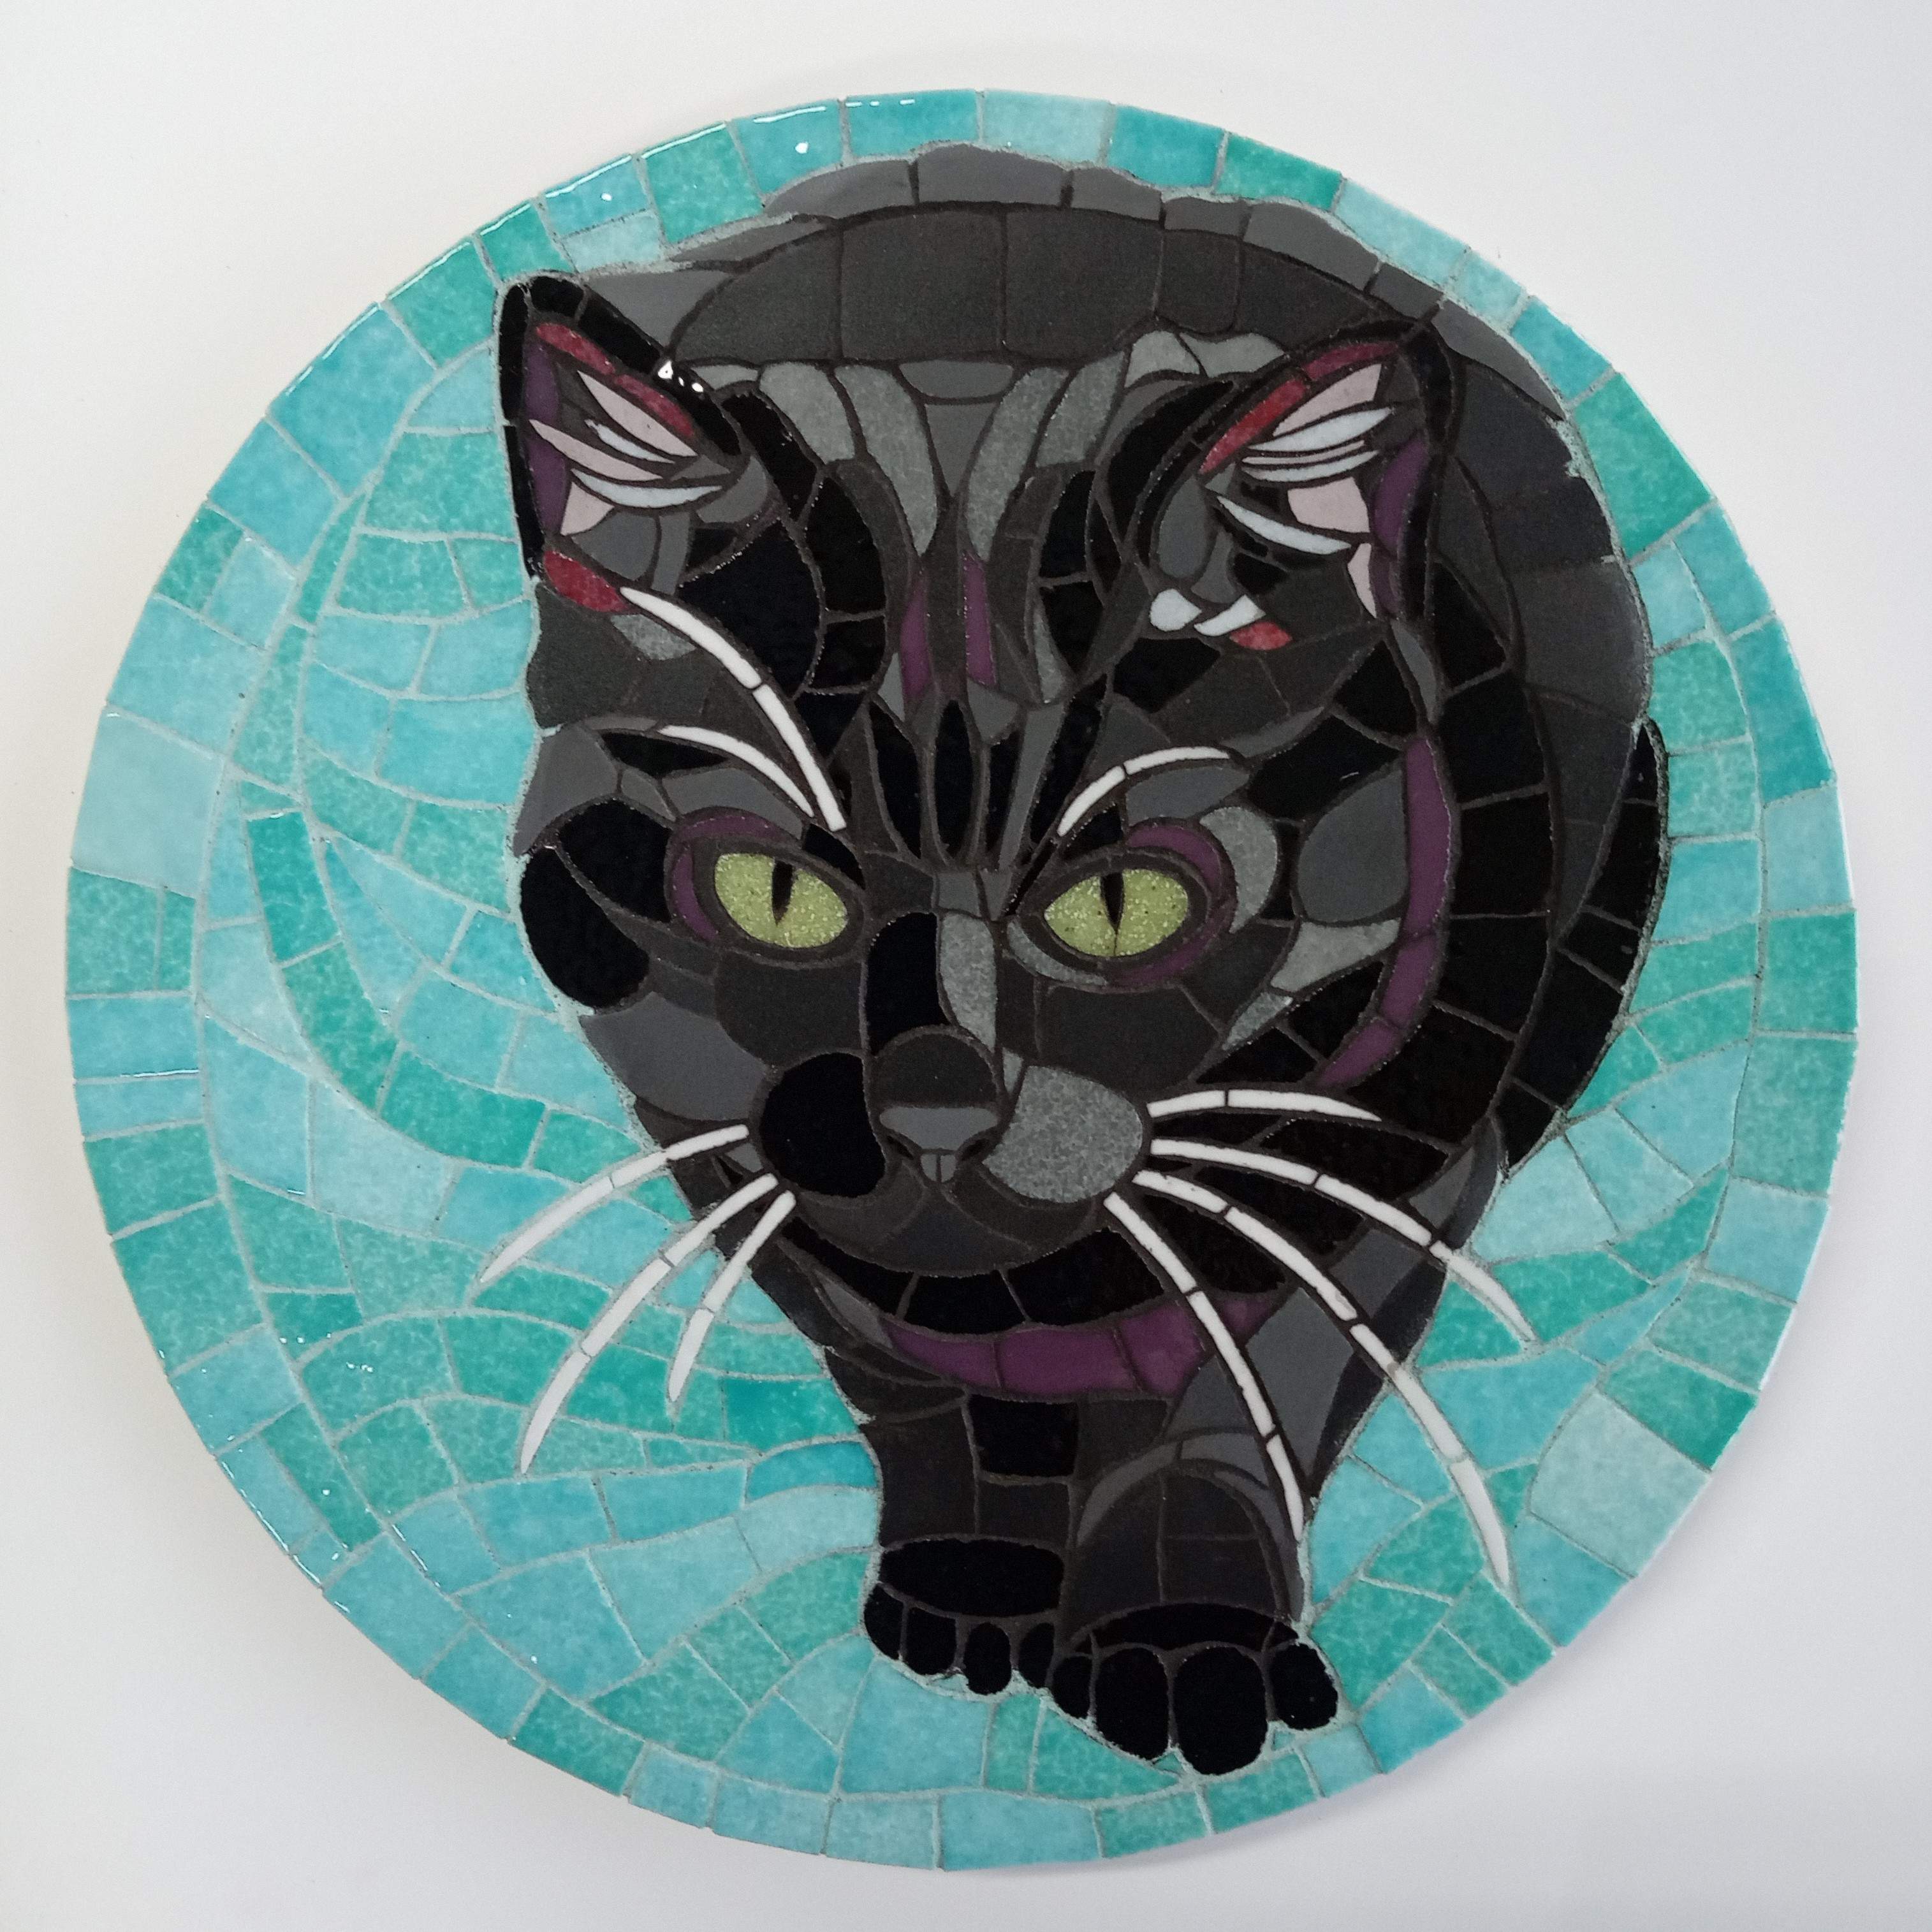 Portret in mozaiek van een zwarte kat met een turquoise achtergrond.